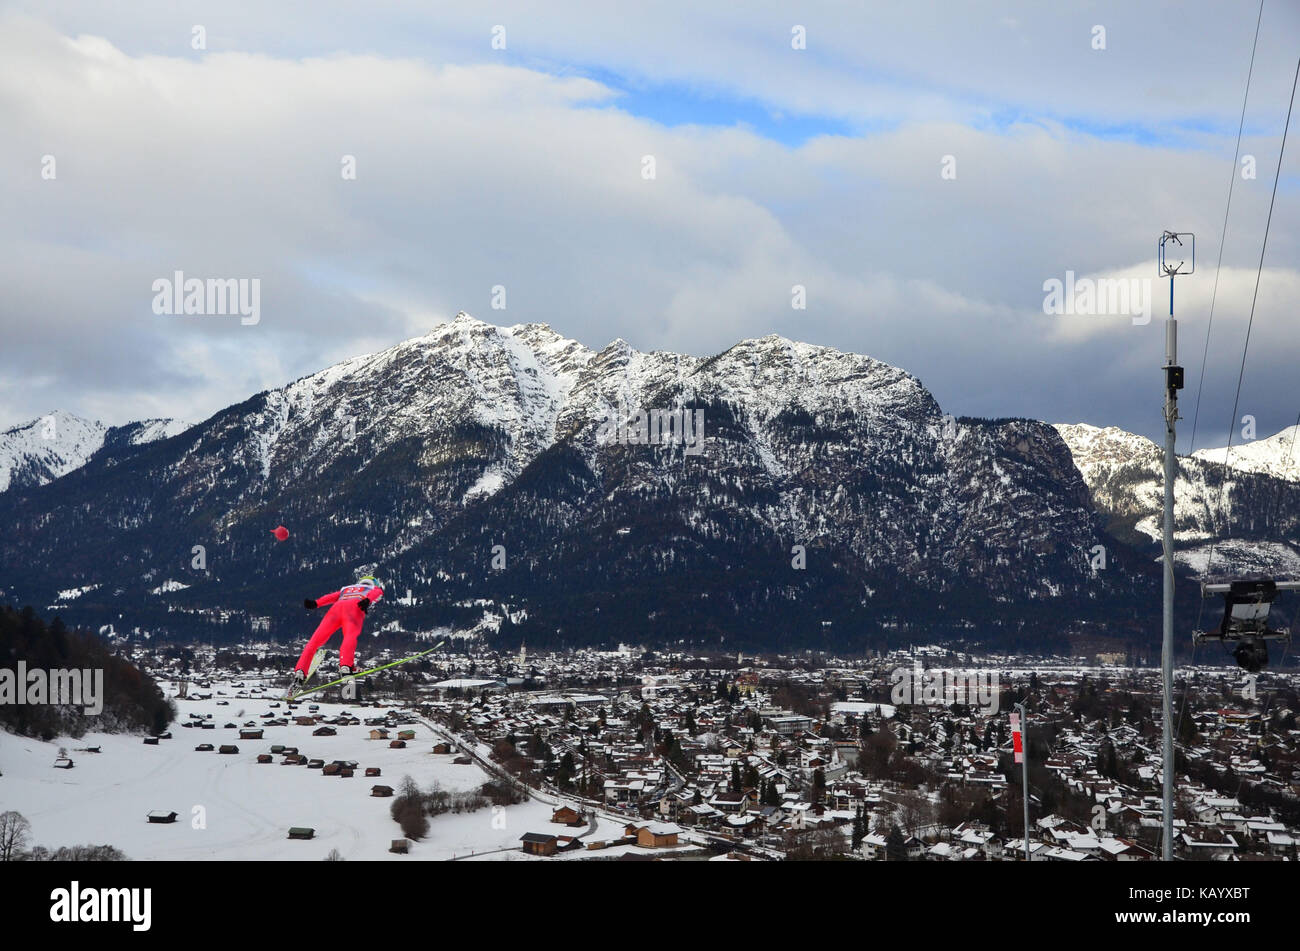 Winter sports, ski jumping, ski jumper, flight, Stock Photo